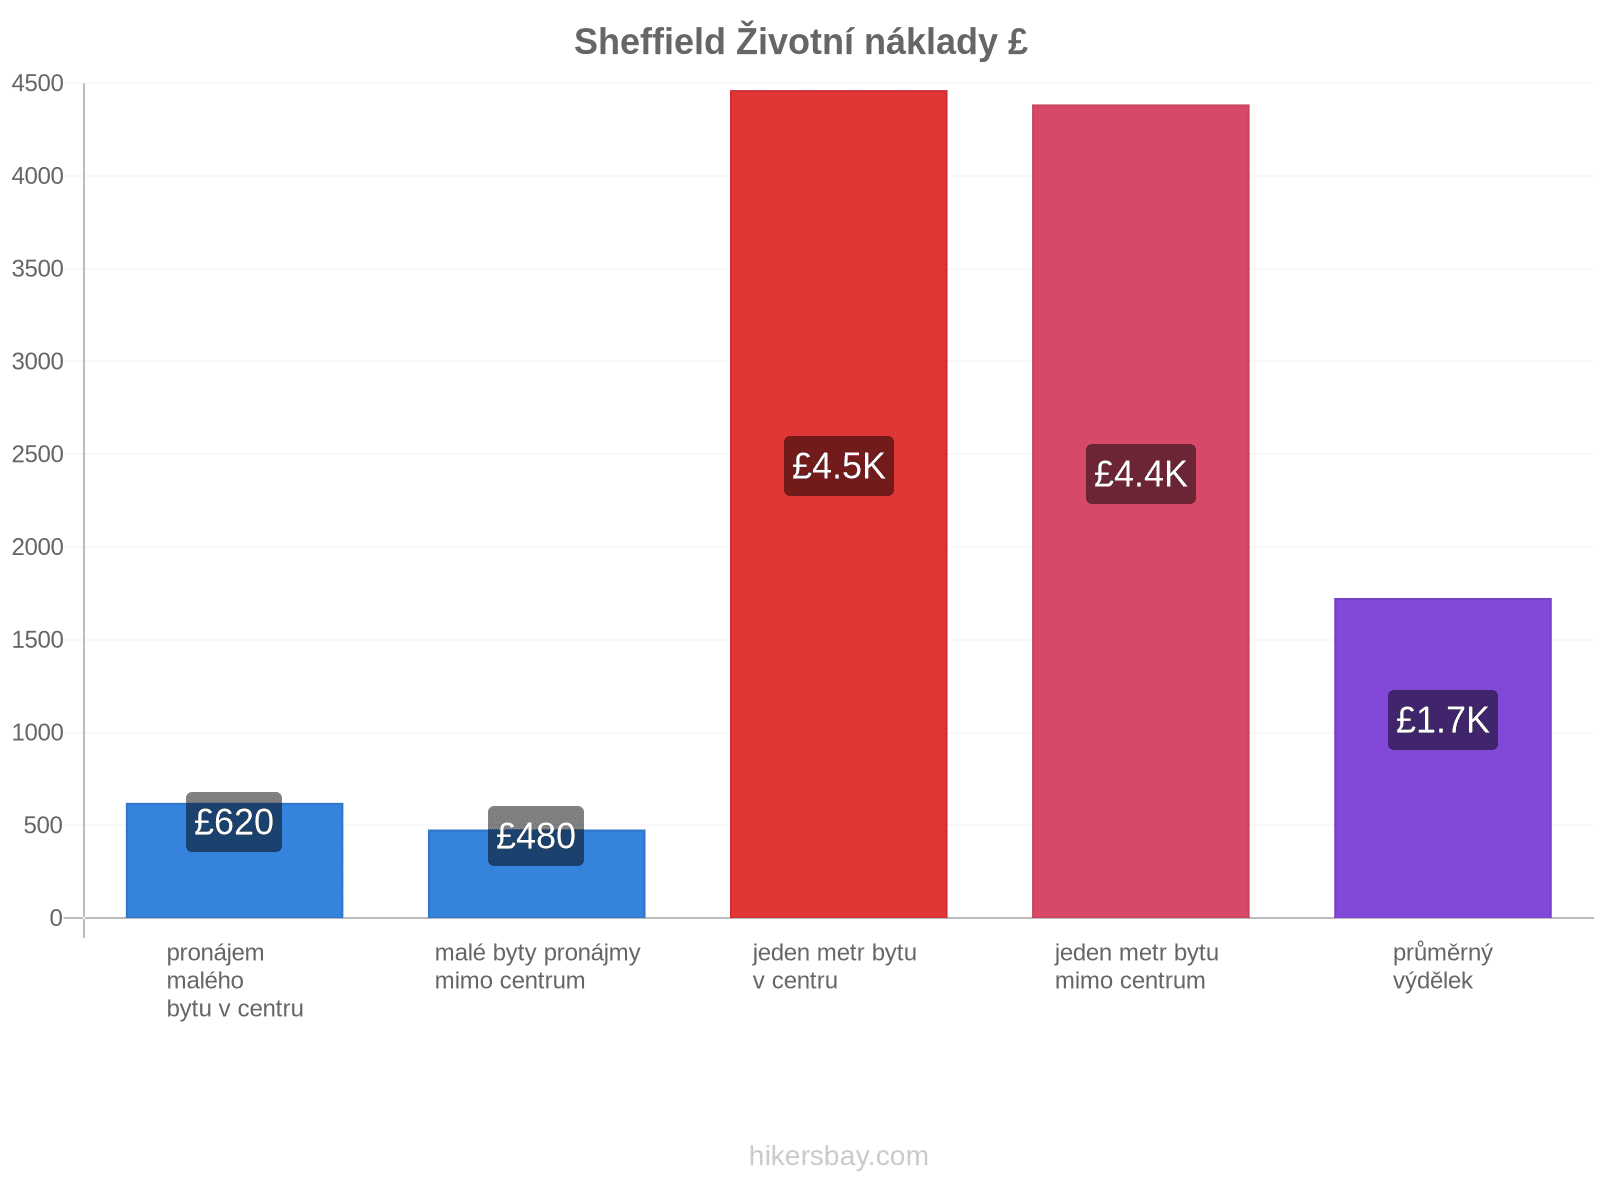 Sheffield životní náklady hikersbay.com